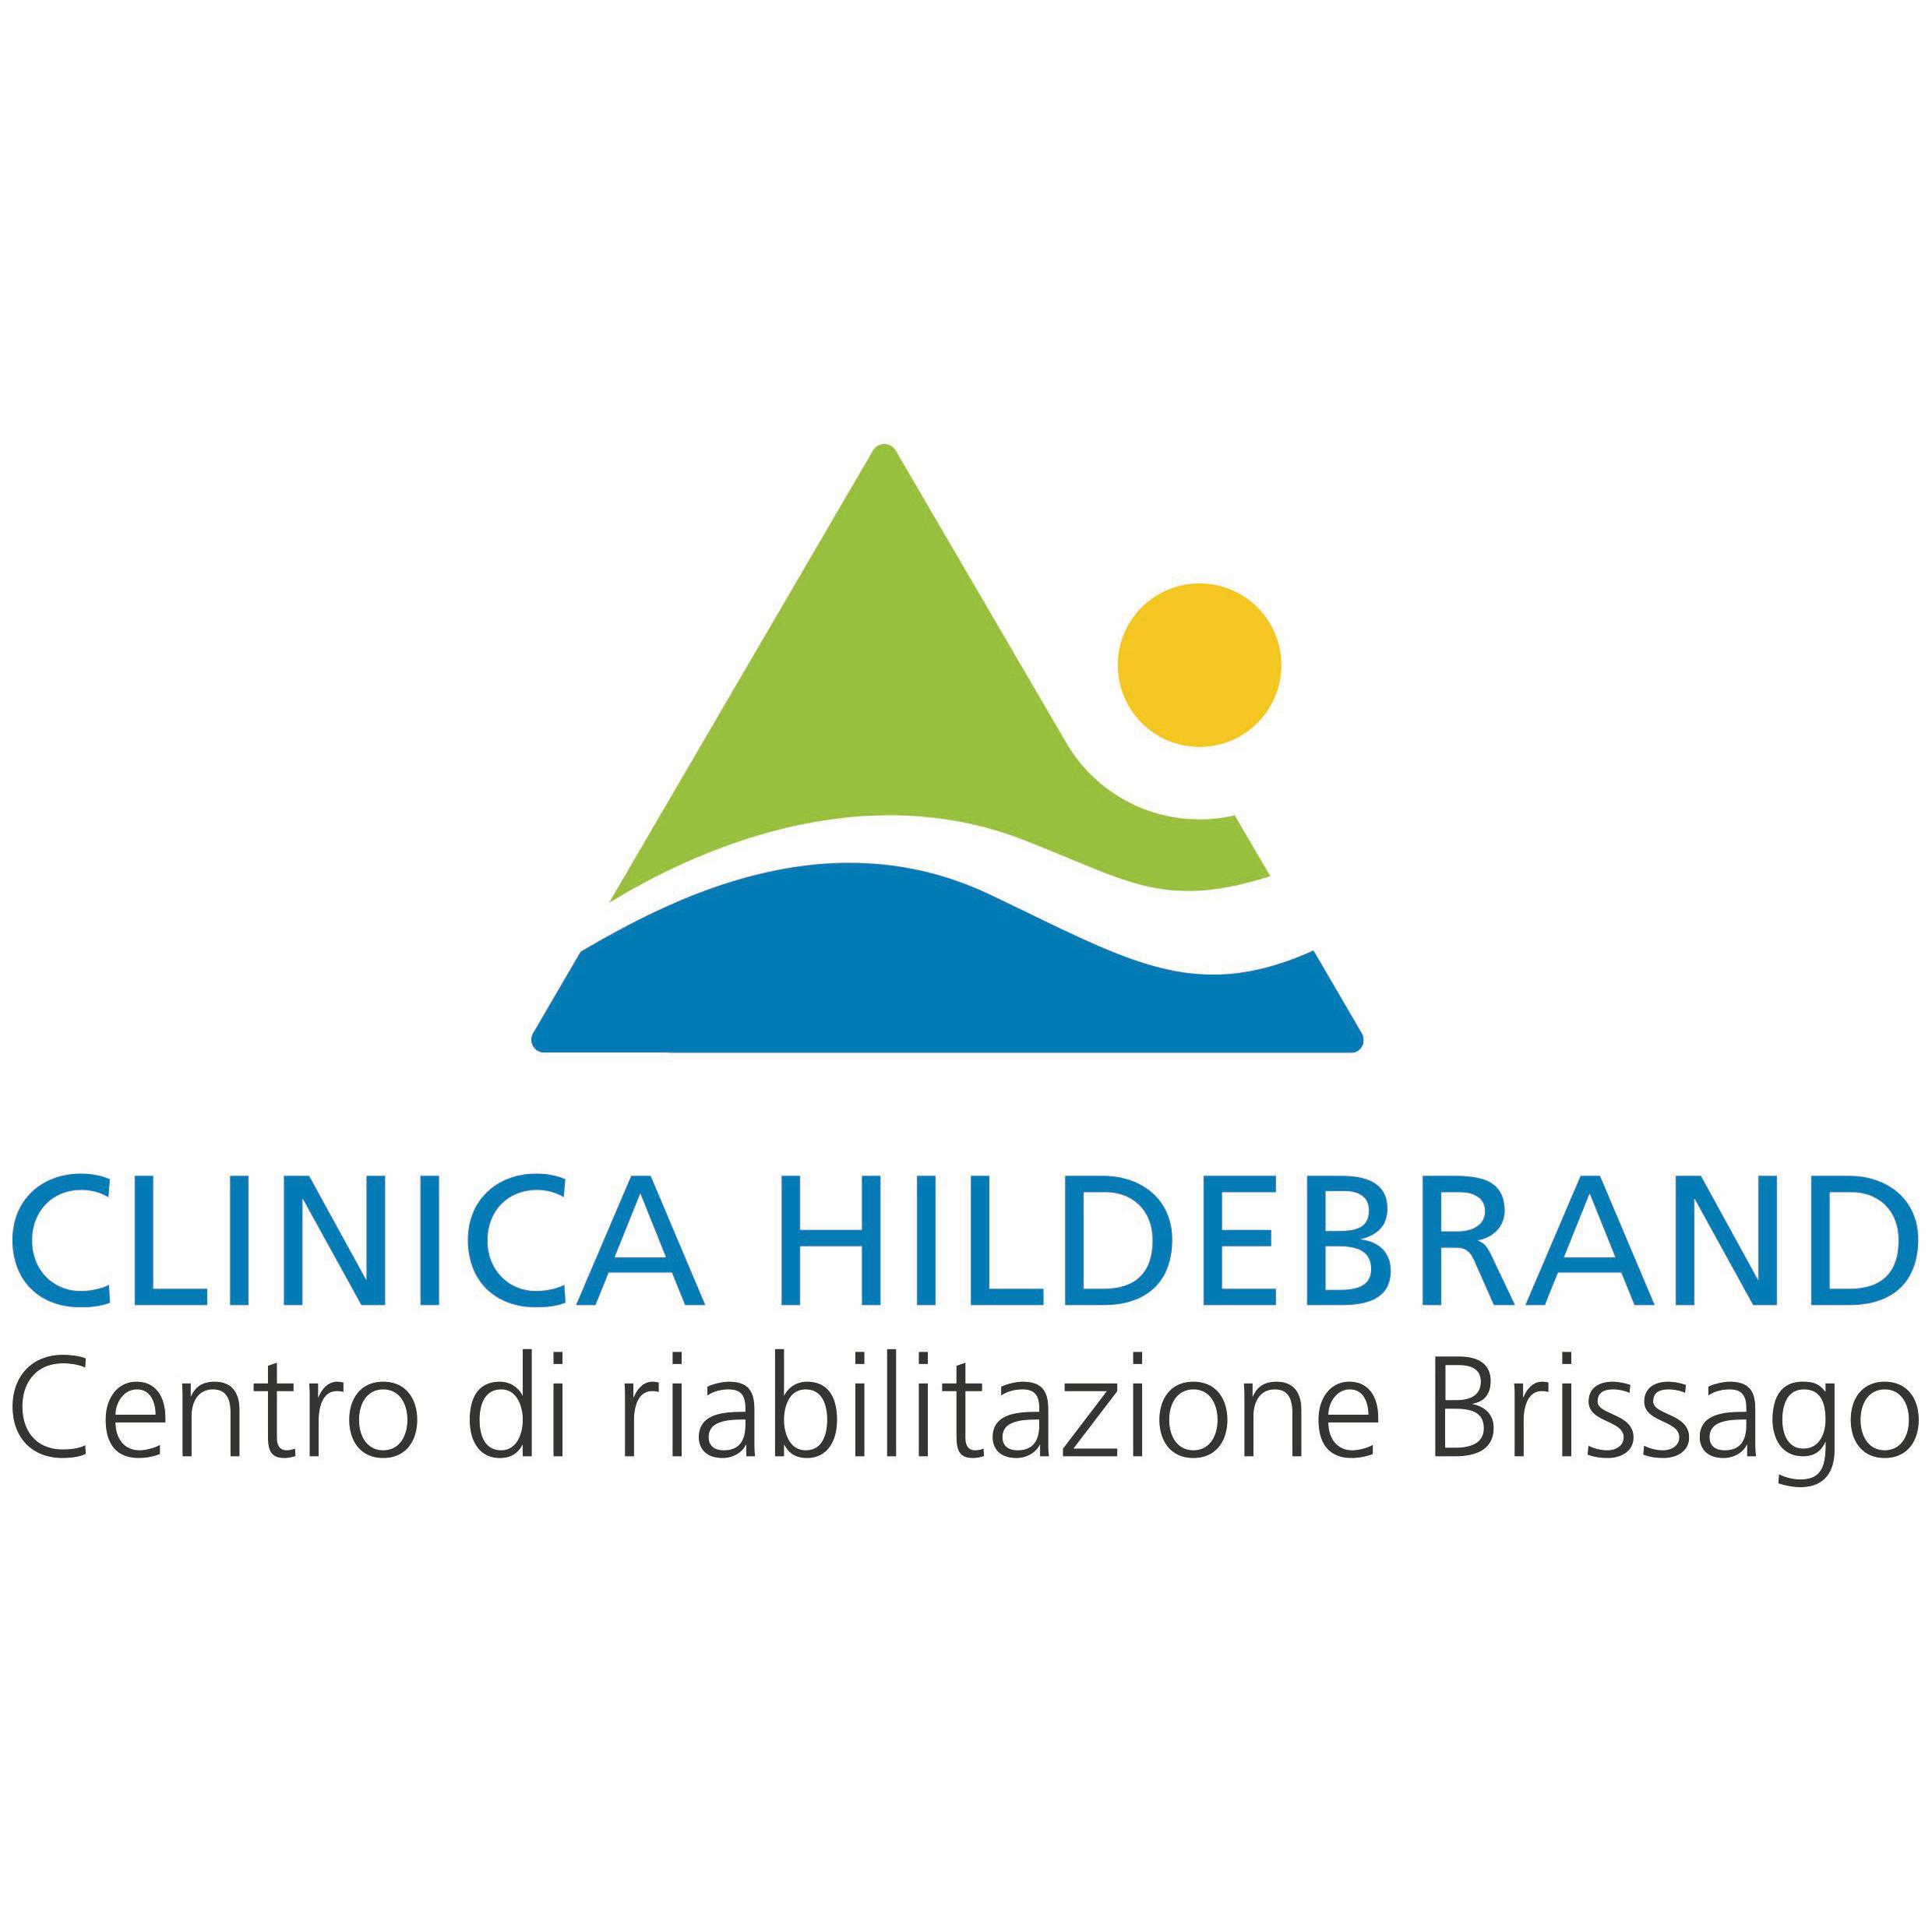 CLINICA HILDEBRAND Logo